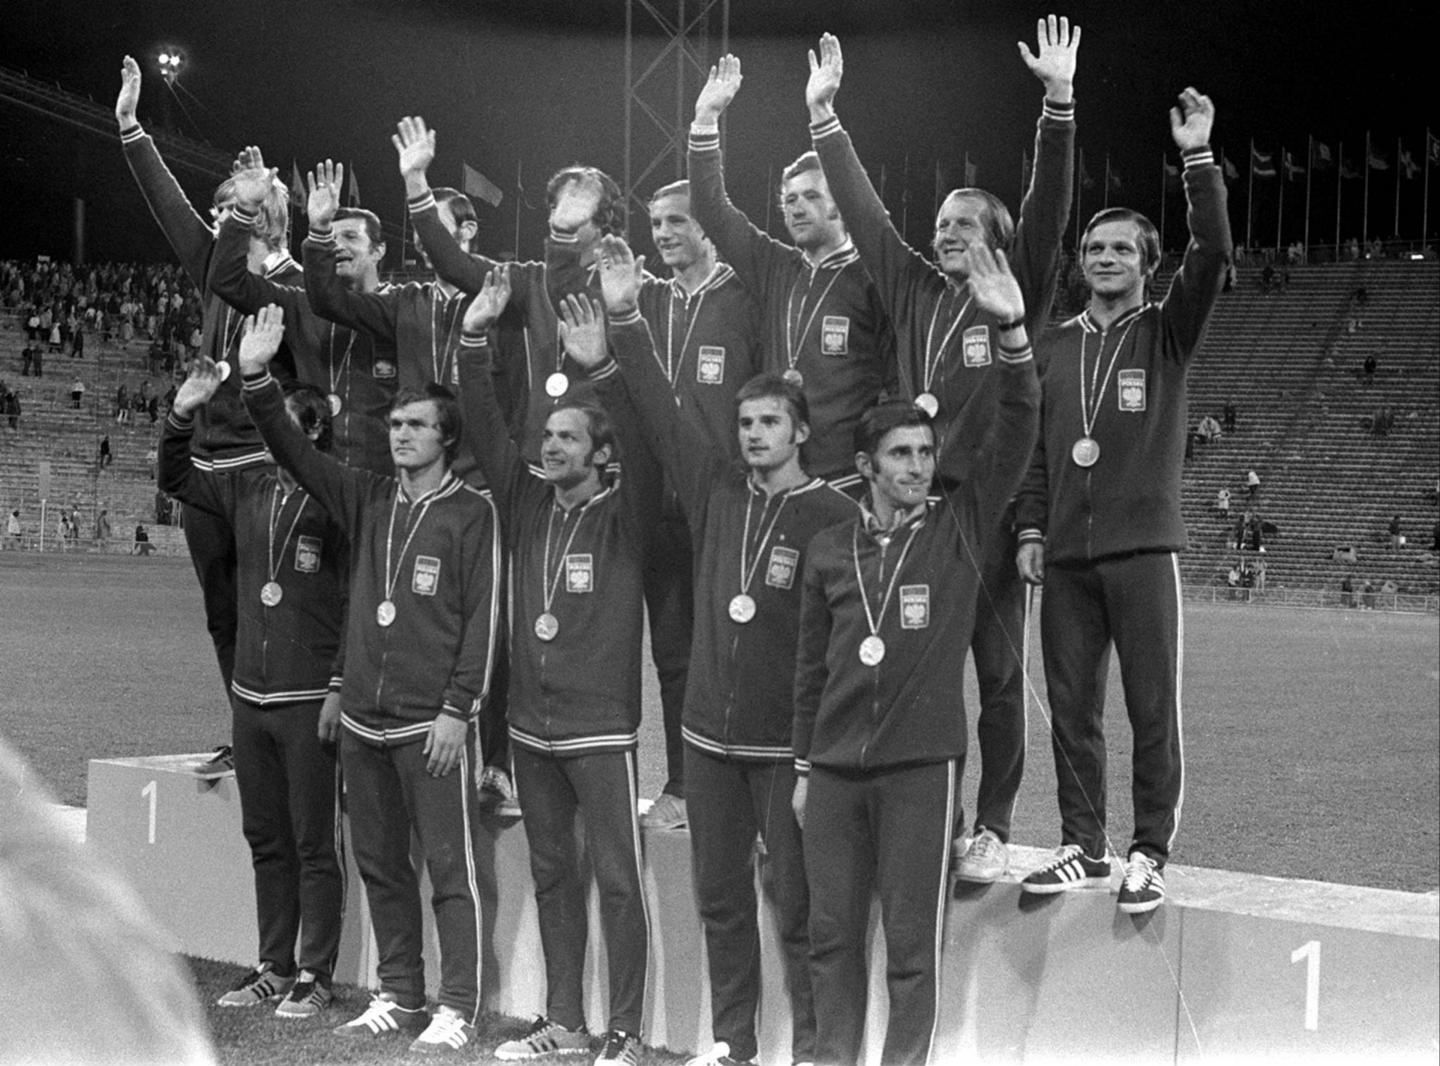 Reprezentacja Polski ze złotymi medalami, w ciemnych strojach, na podium igrzysk olimpijskich 1972.